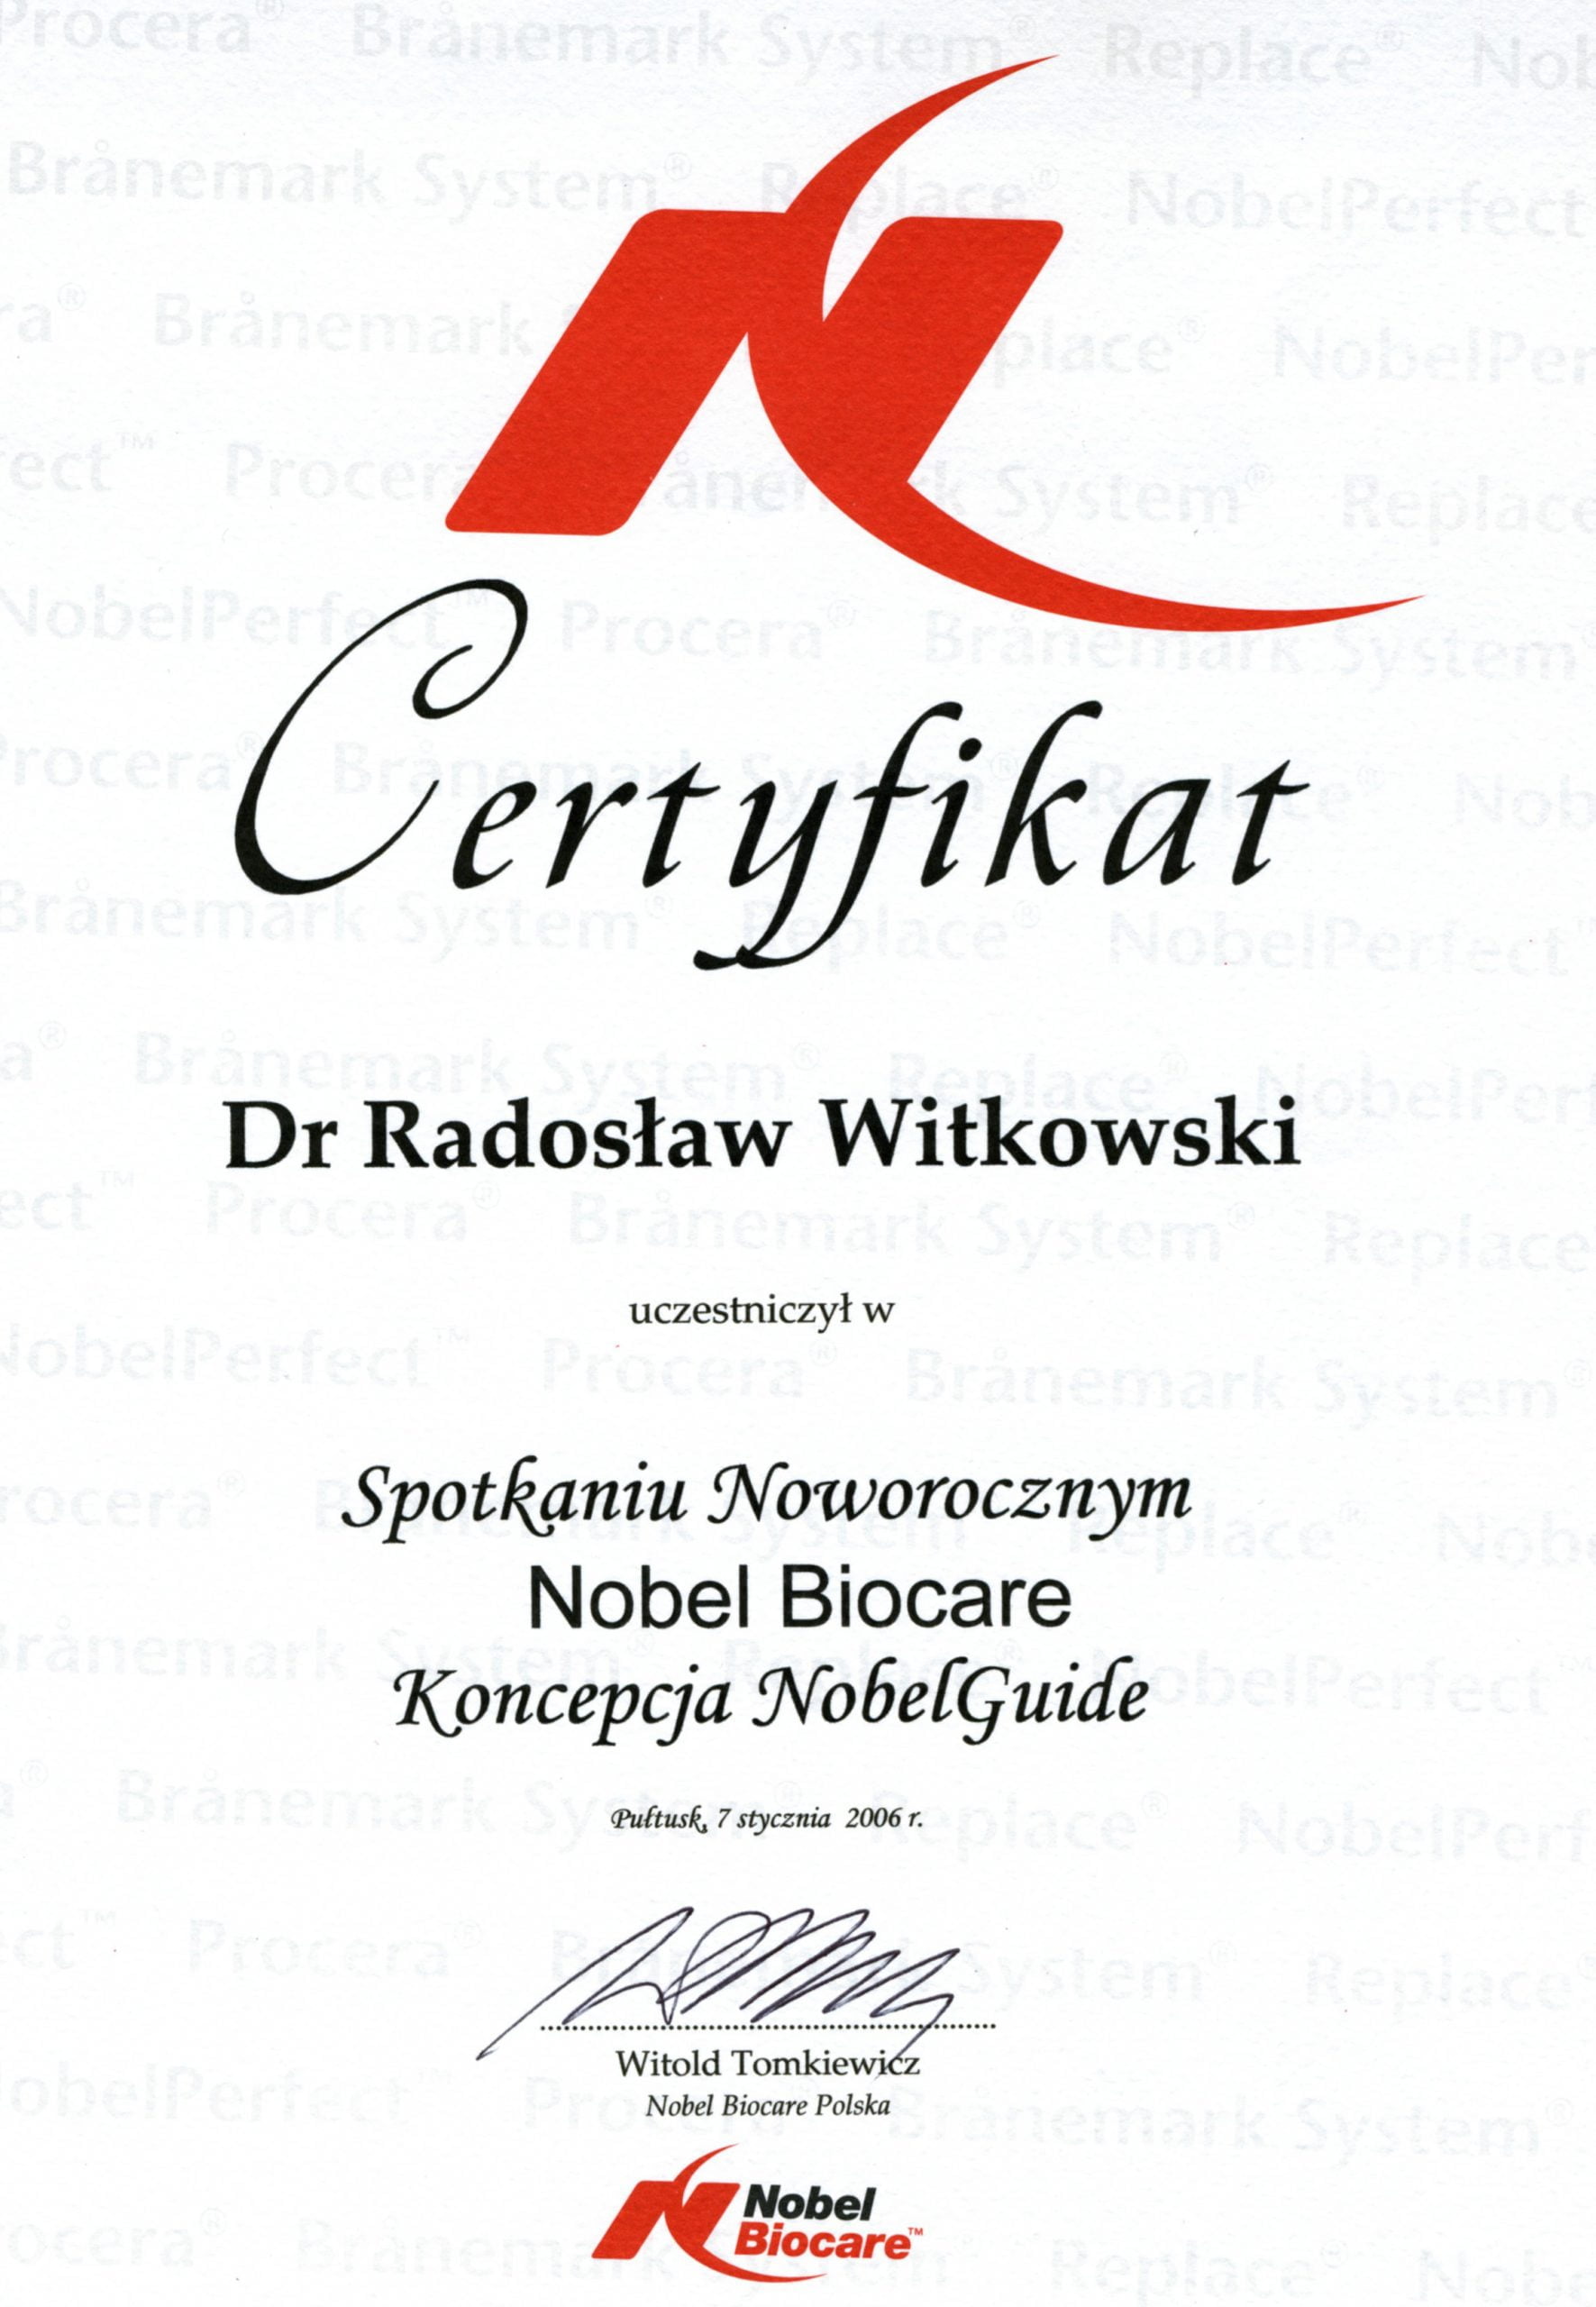 Radosław Witkowski certyfikat 45